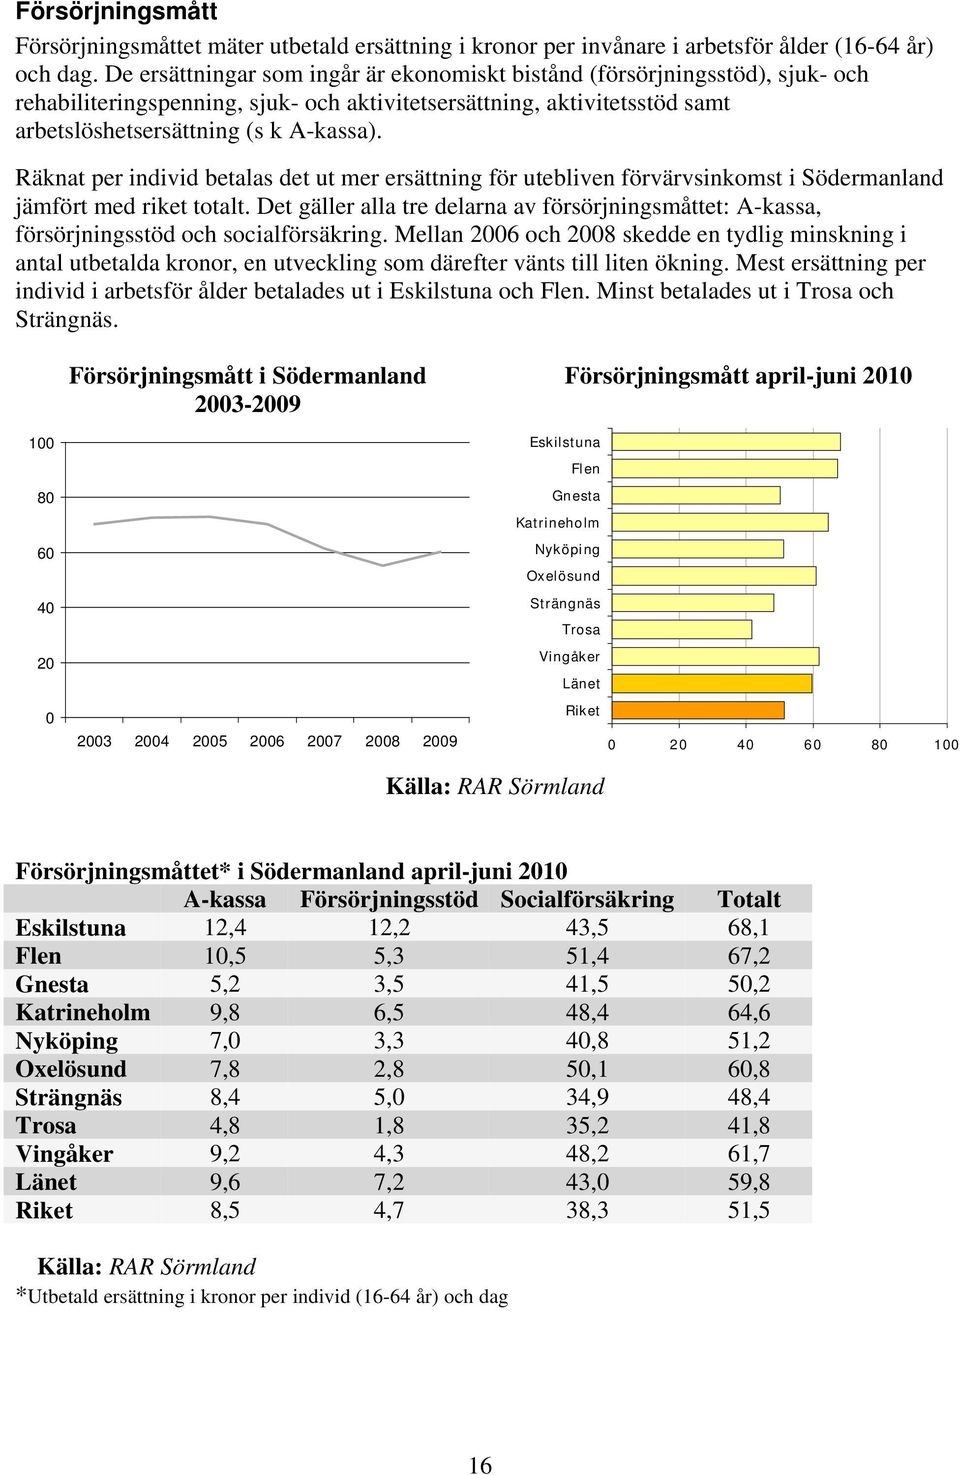 Räknat per individ betalas det ut mer ersättning för utebliven förvärvsinkomst i Södermanland jämfört med riket totalt.